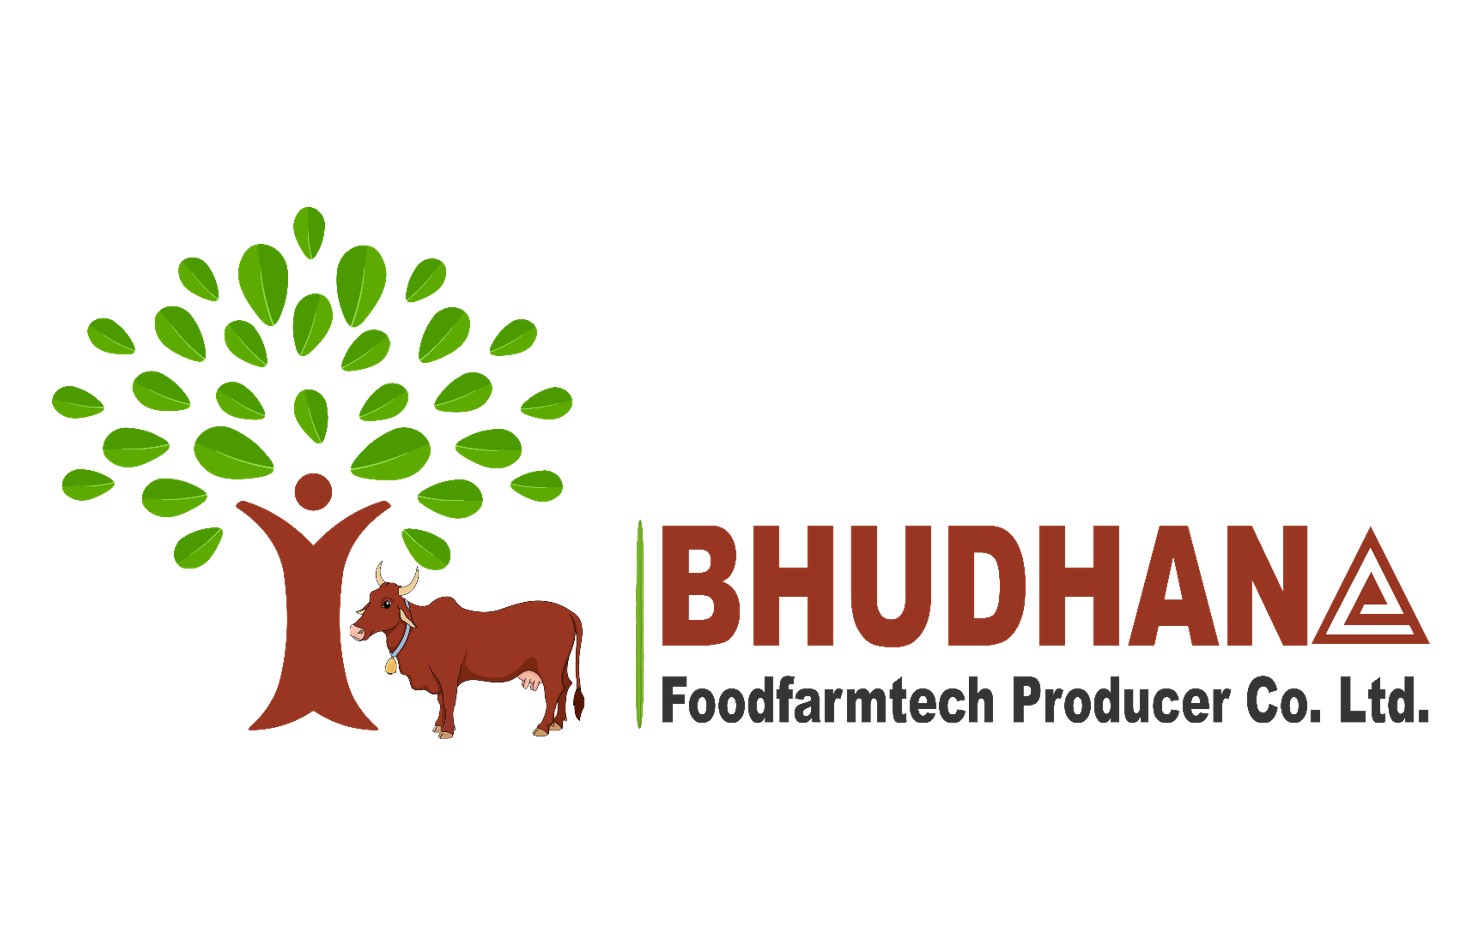 Bhudhana Foodfarmtech Producer Co. Ltd.